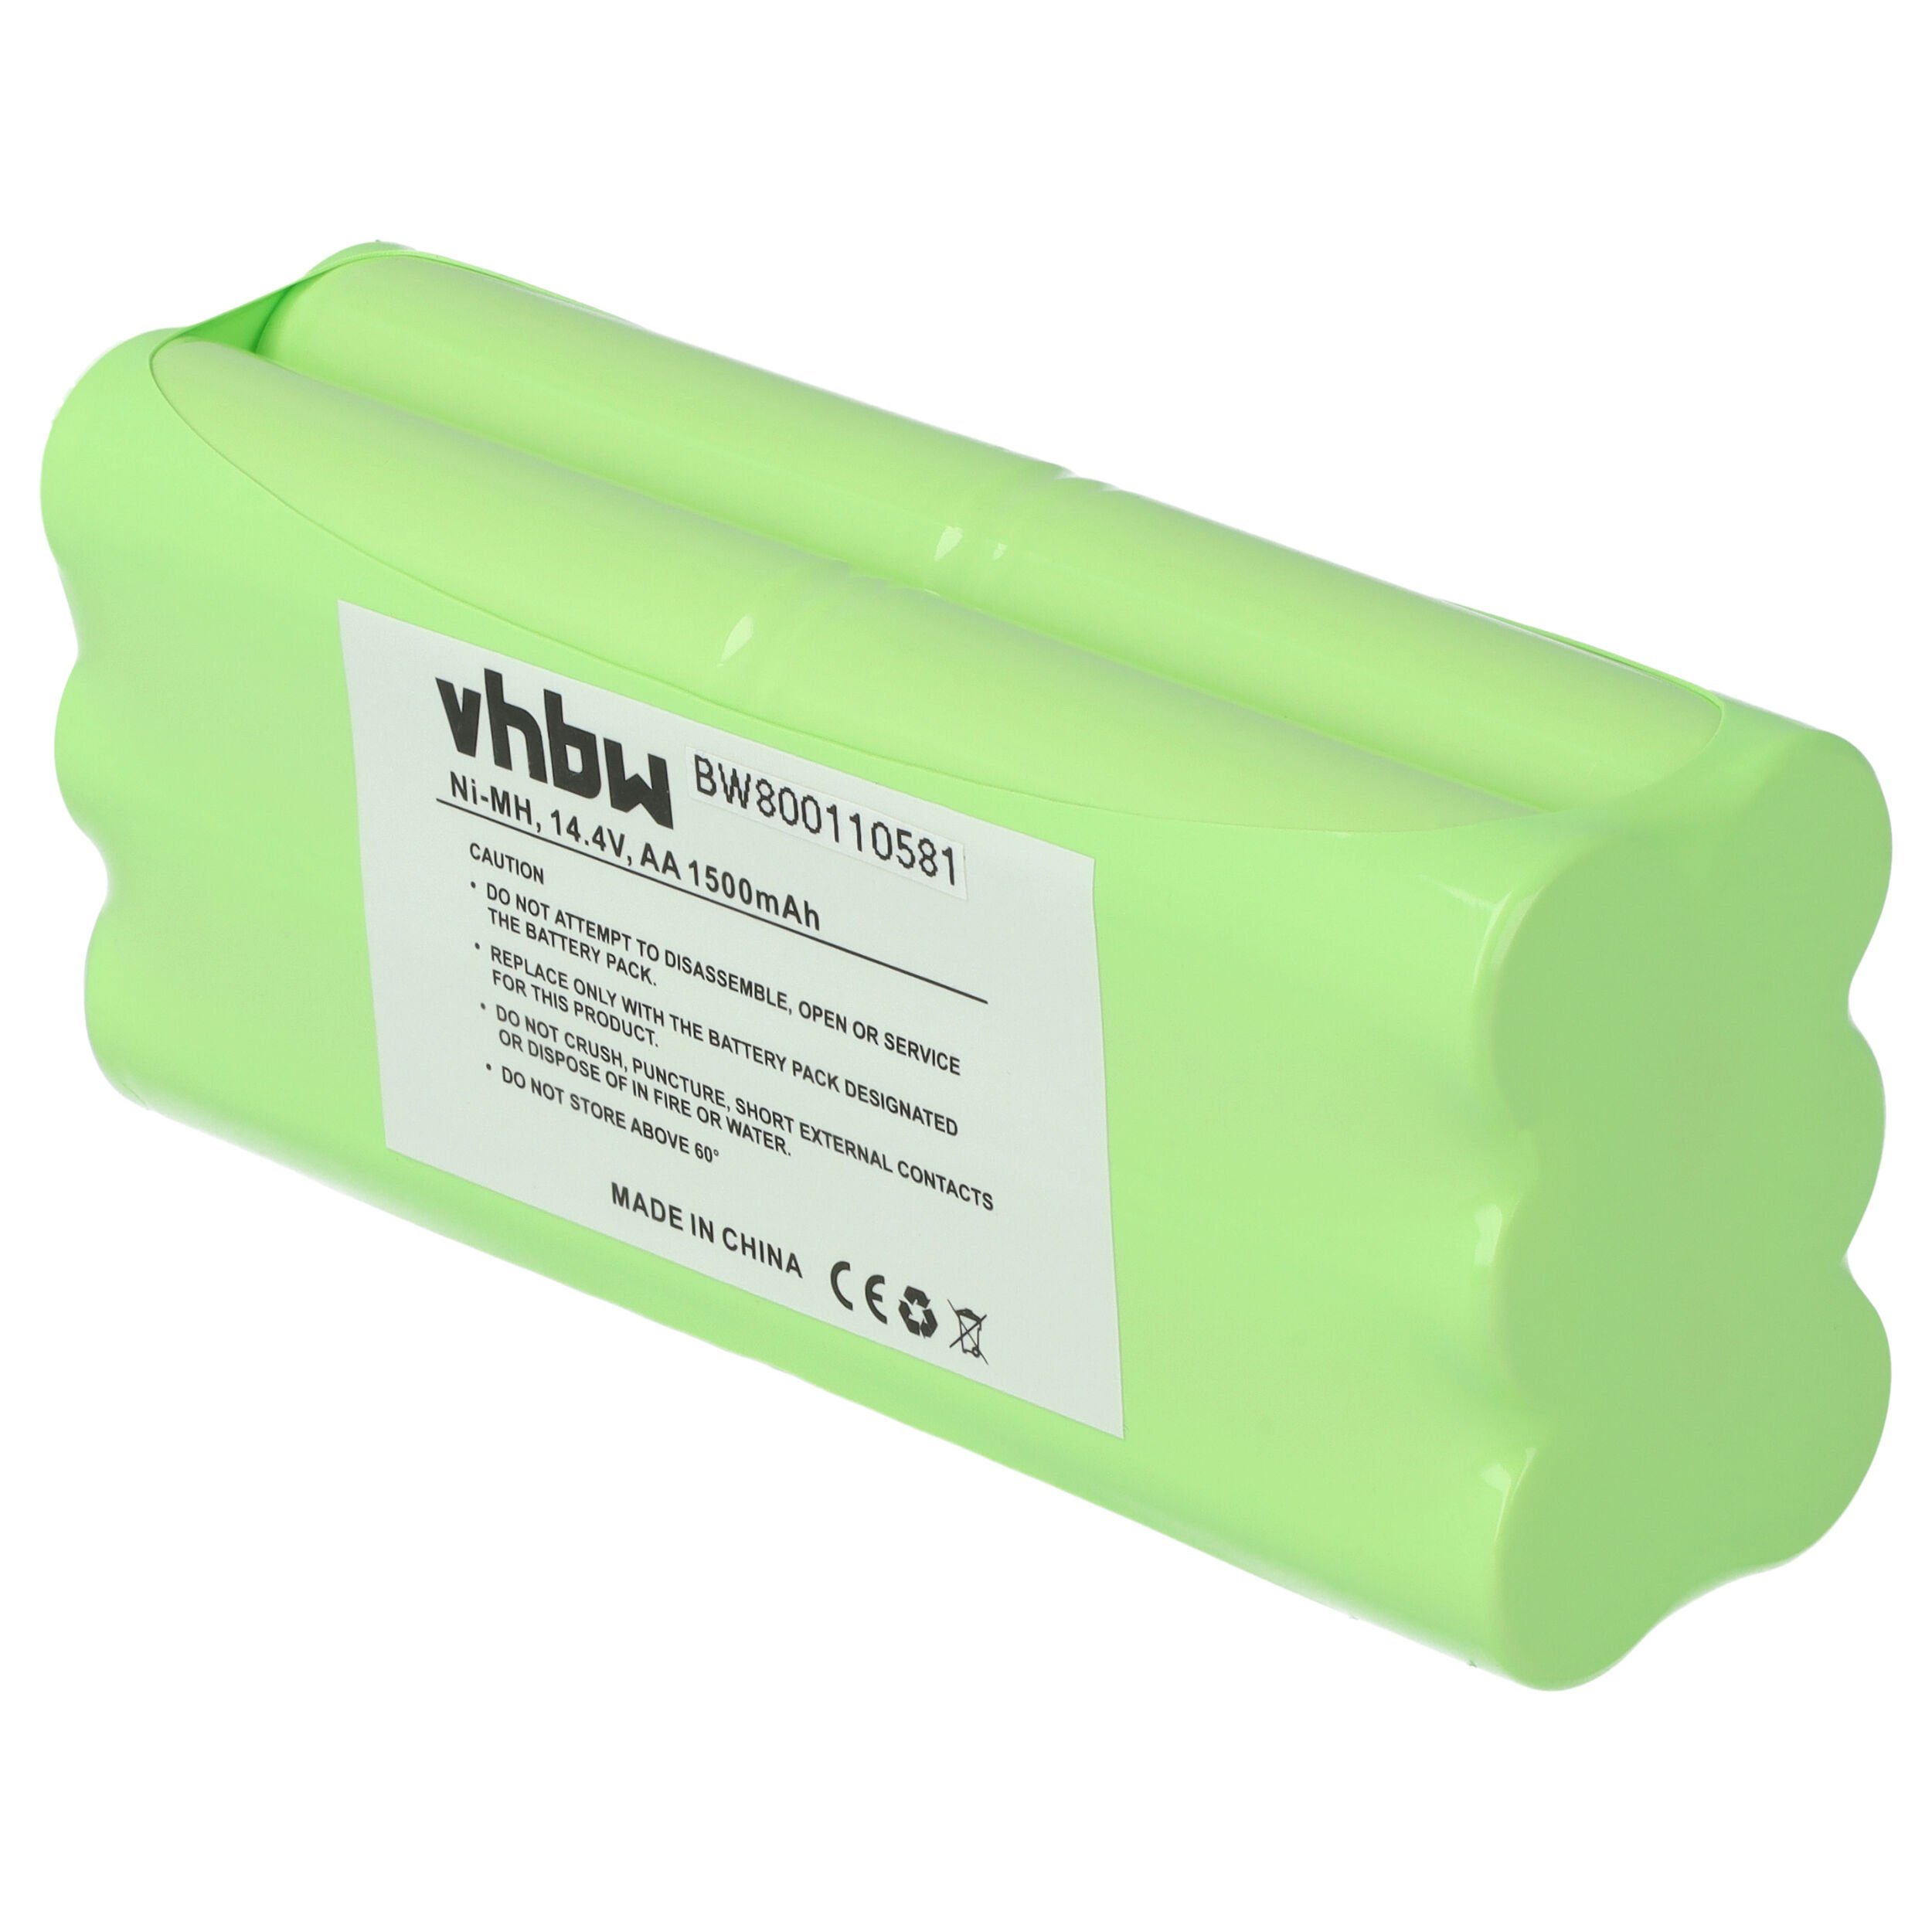 vhbw kompatibel Midea mit NiMH V) mAh (14,4 1500 Staubsauger-Akku R1-L051B